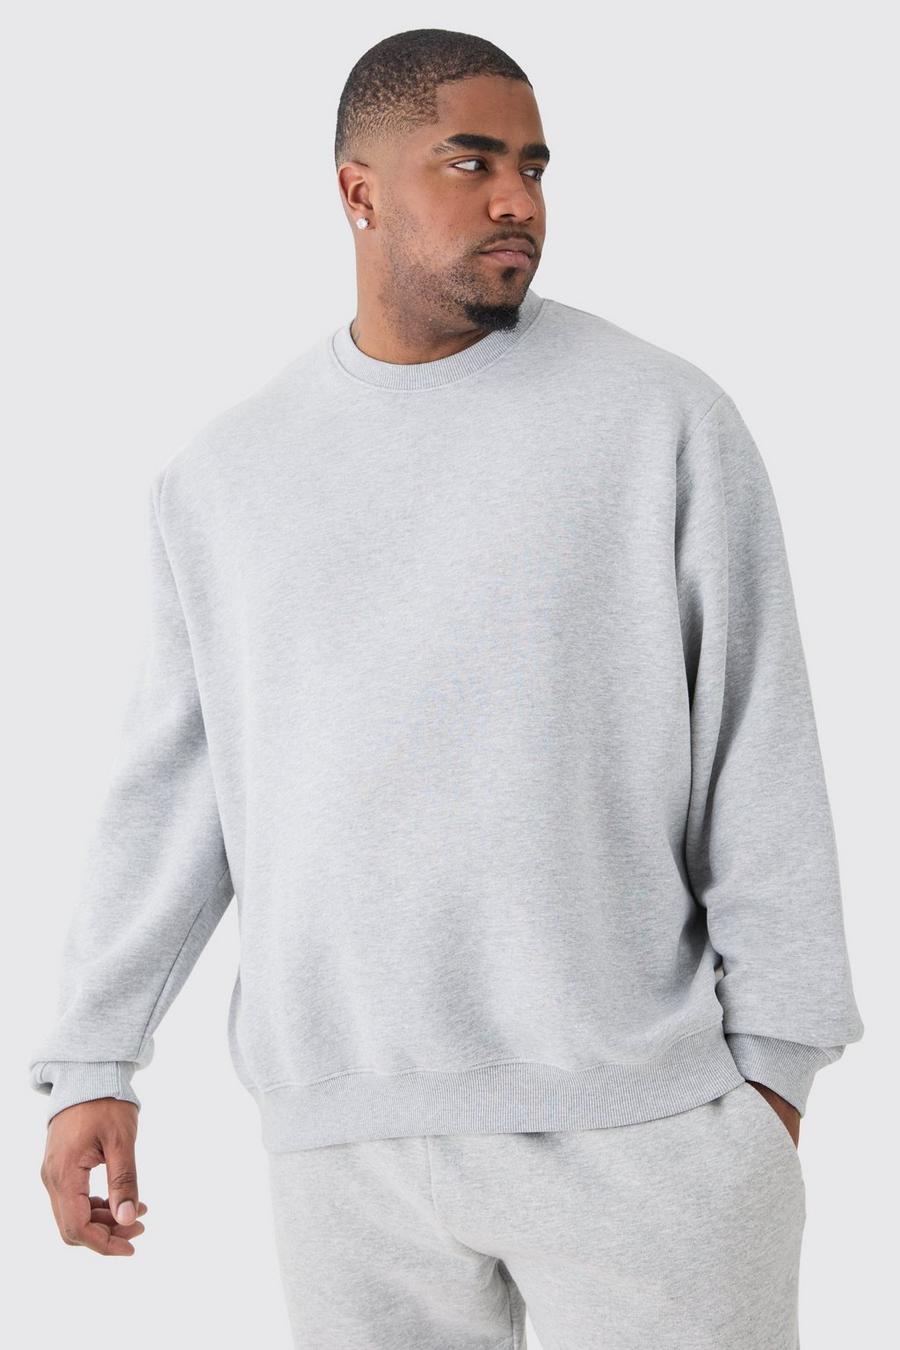 Plus Basic Sweatshirt in Grau, Grey marl